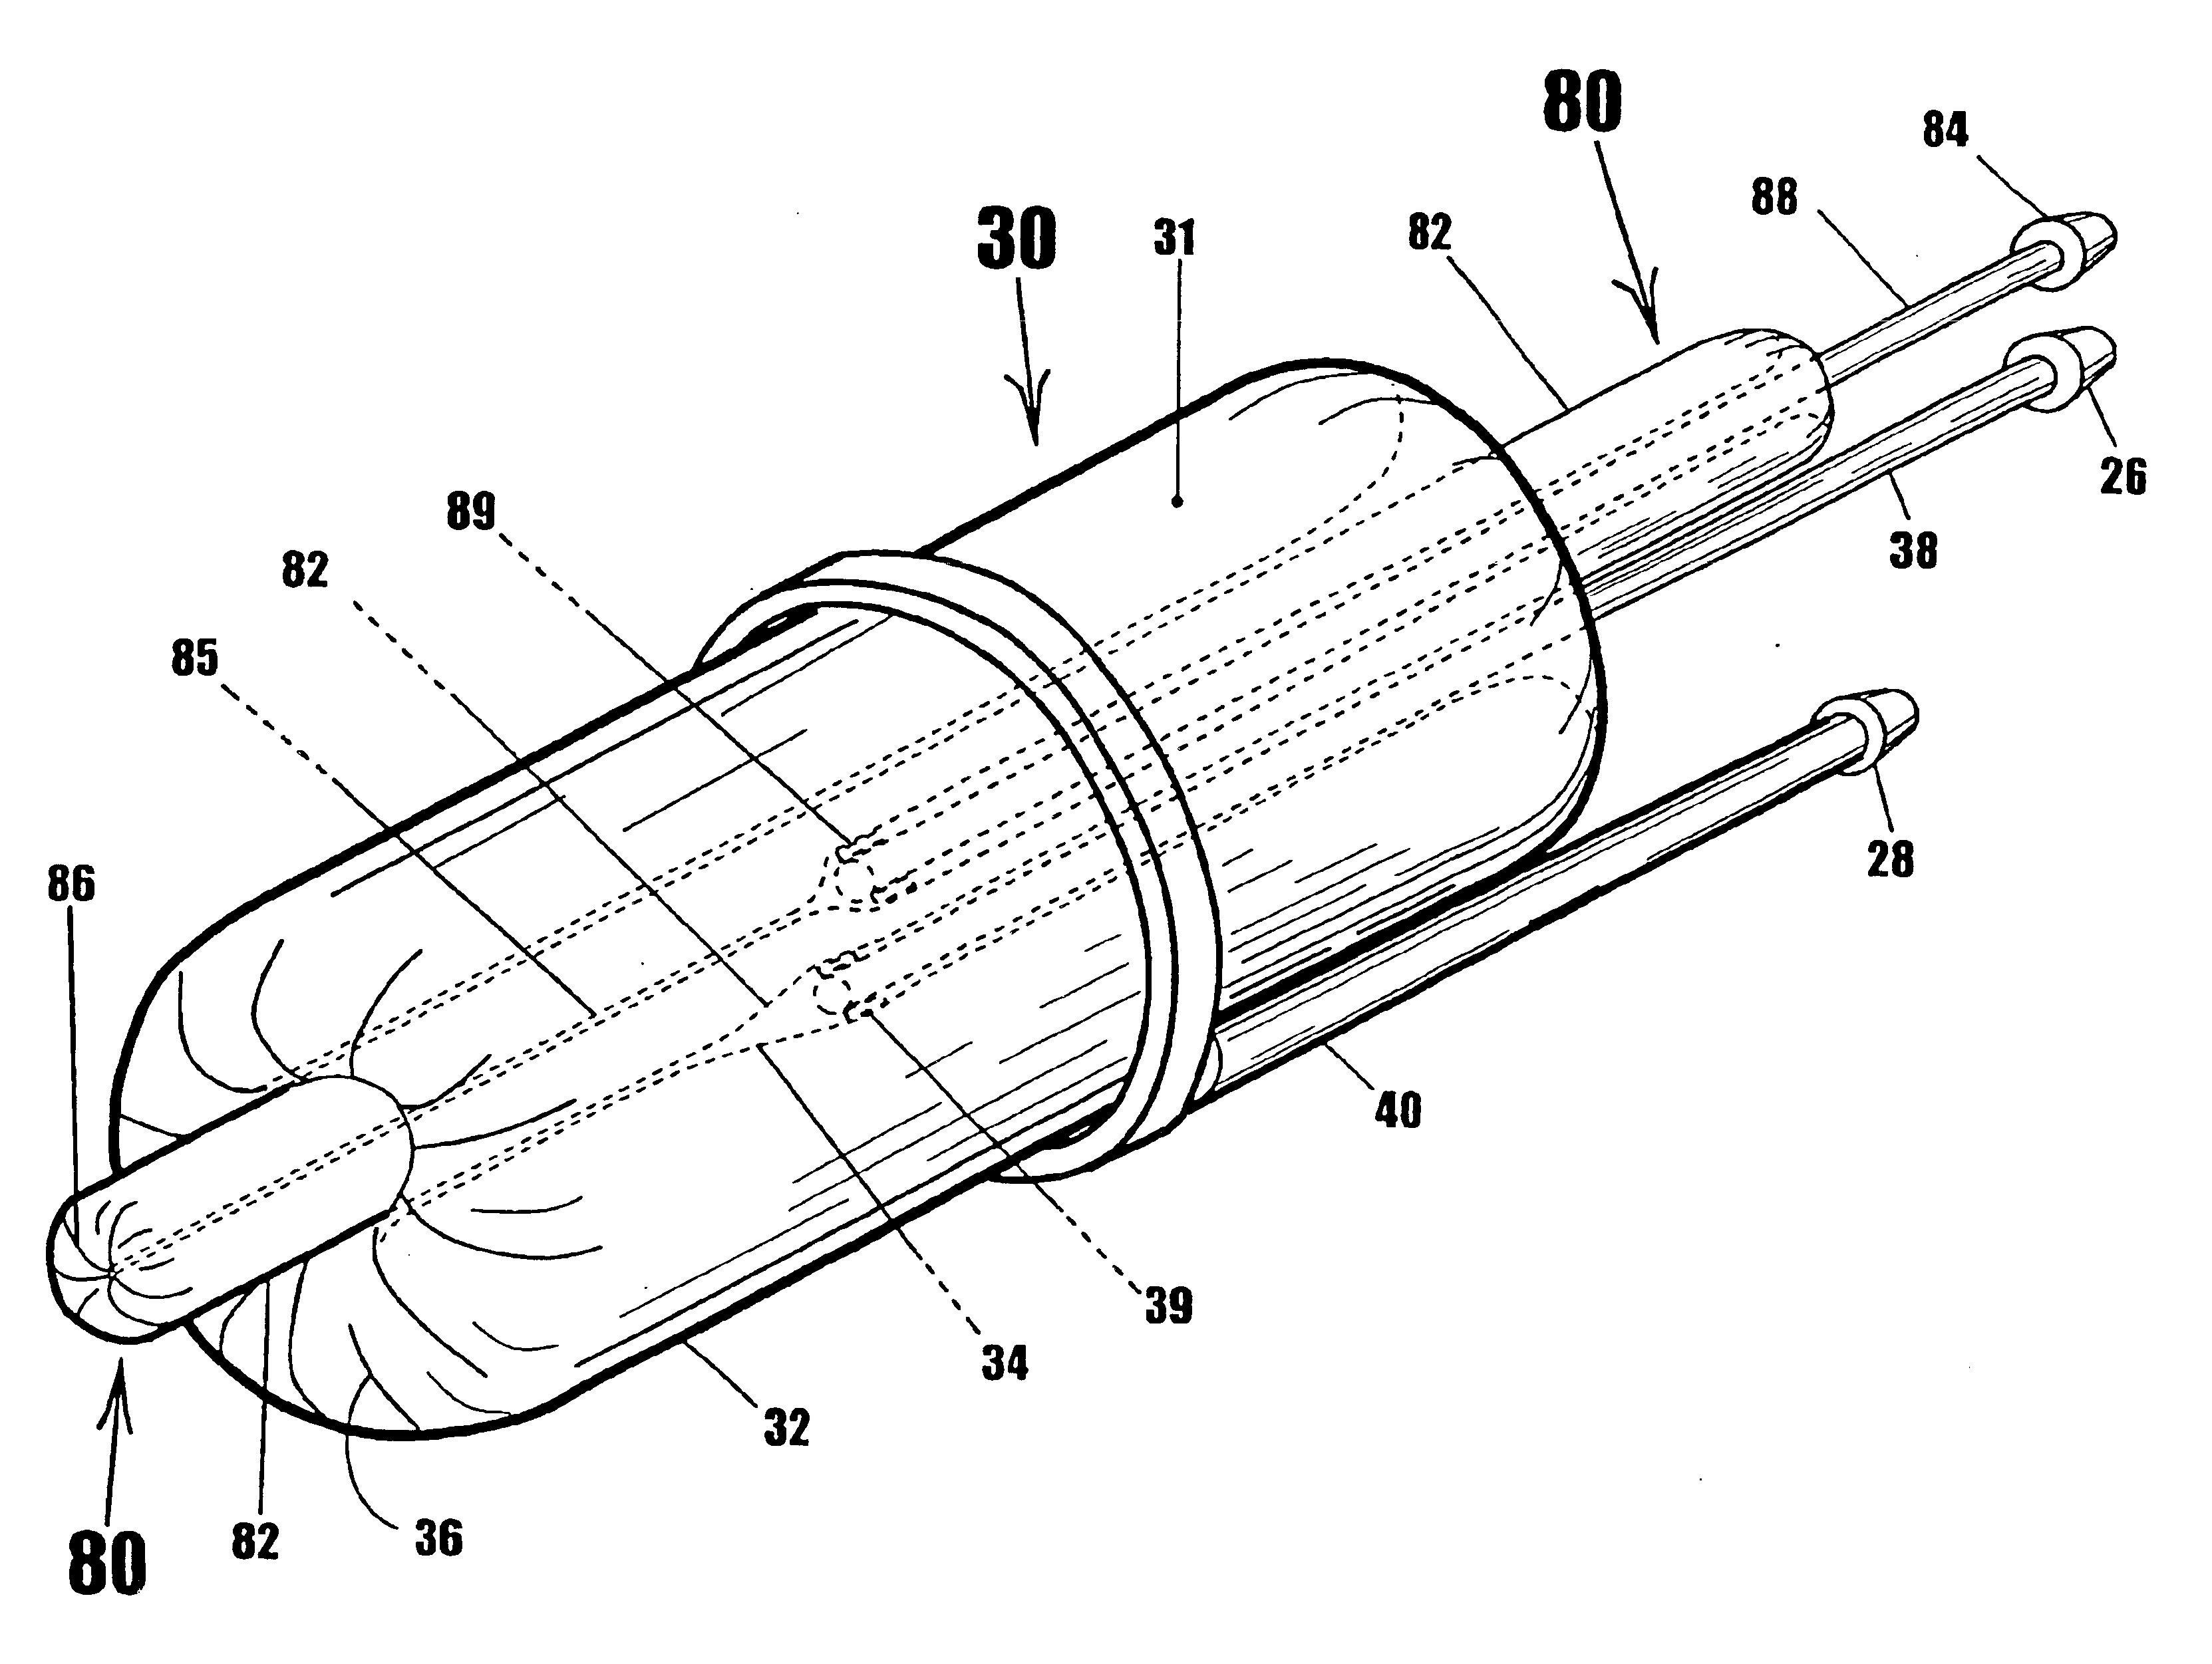 Torus-shaped mechanical gripper